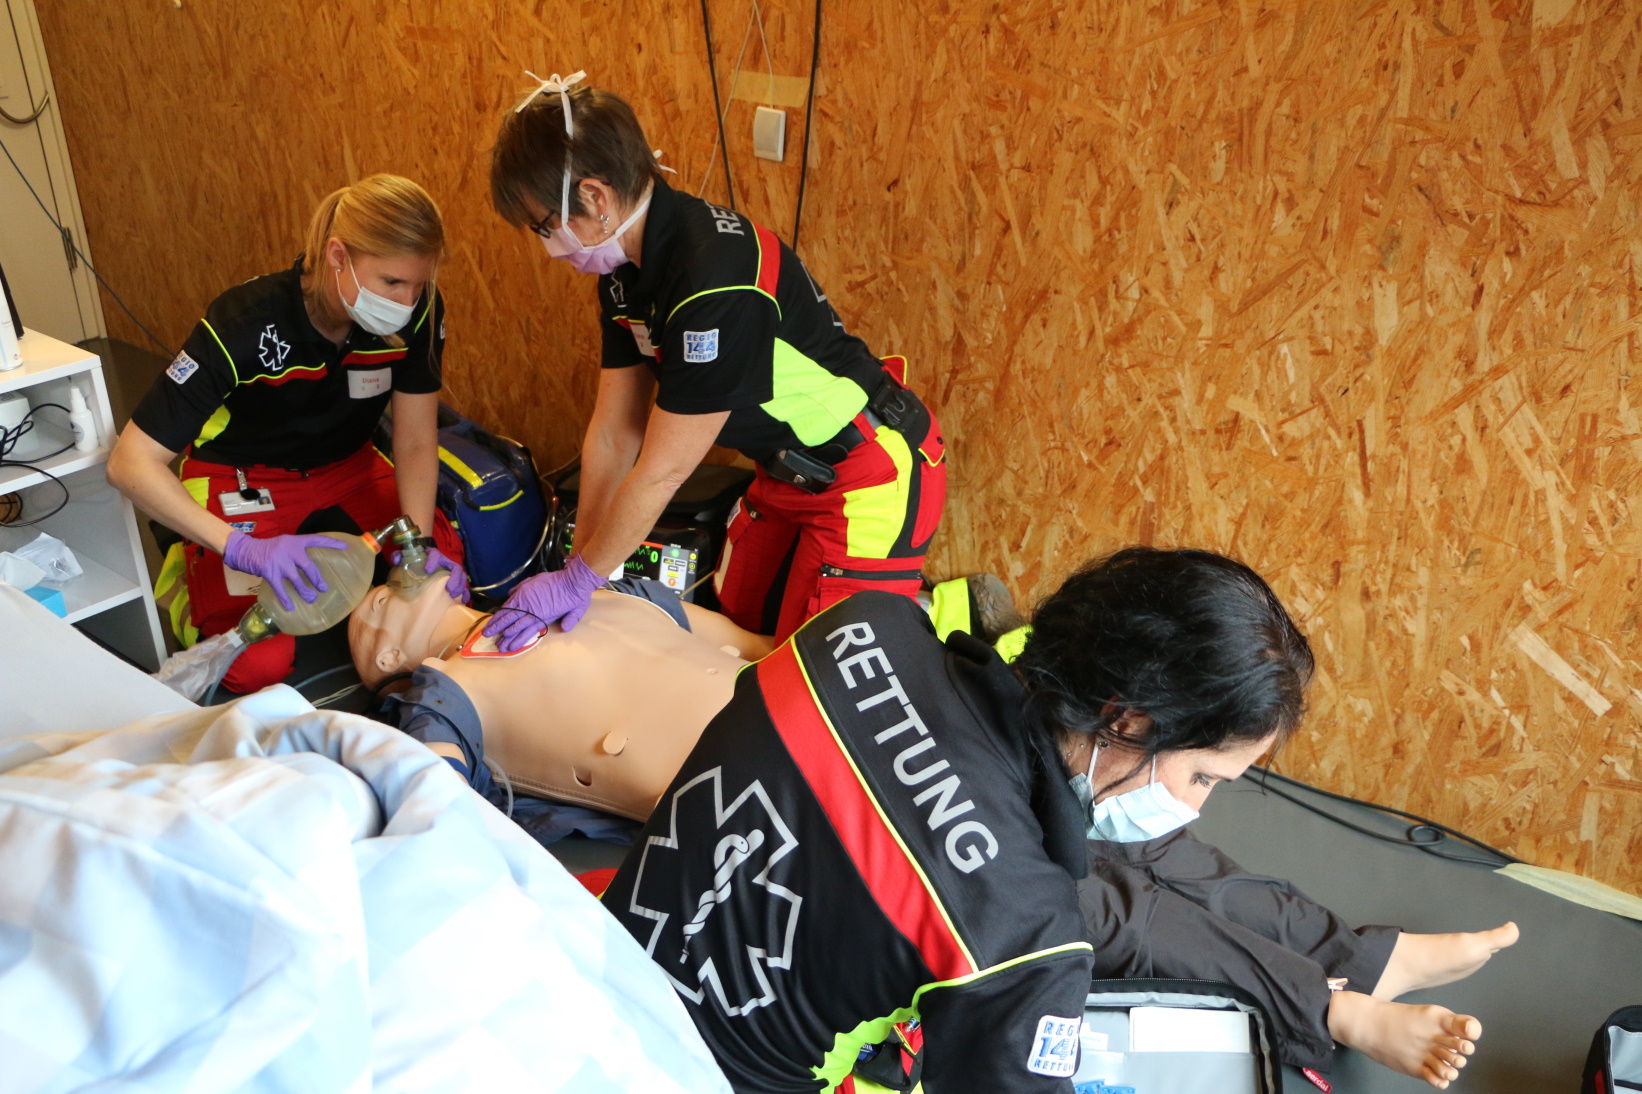 Zwei Rettungssanitäterinnen und eine Notärztin am Reanimieren im Rahmen eines Fallbeispiels: damit diese klassische Teamarbeit klappt, müssen CRM-Grundsätze beachtet werden.